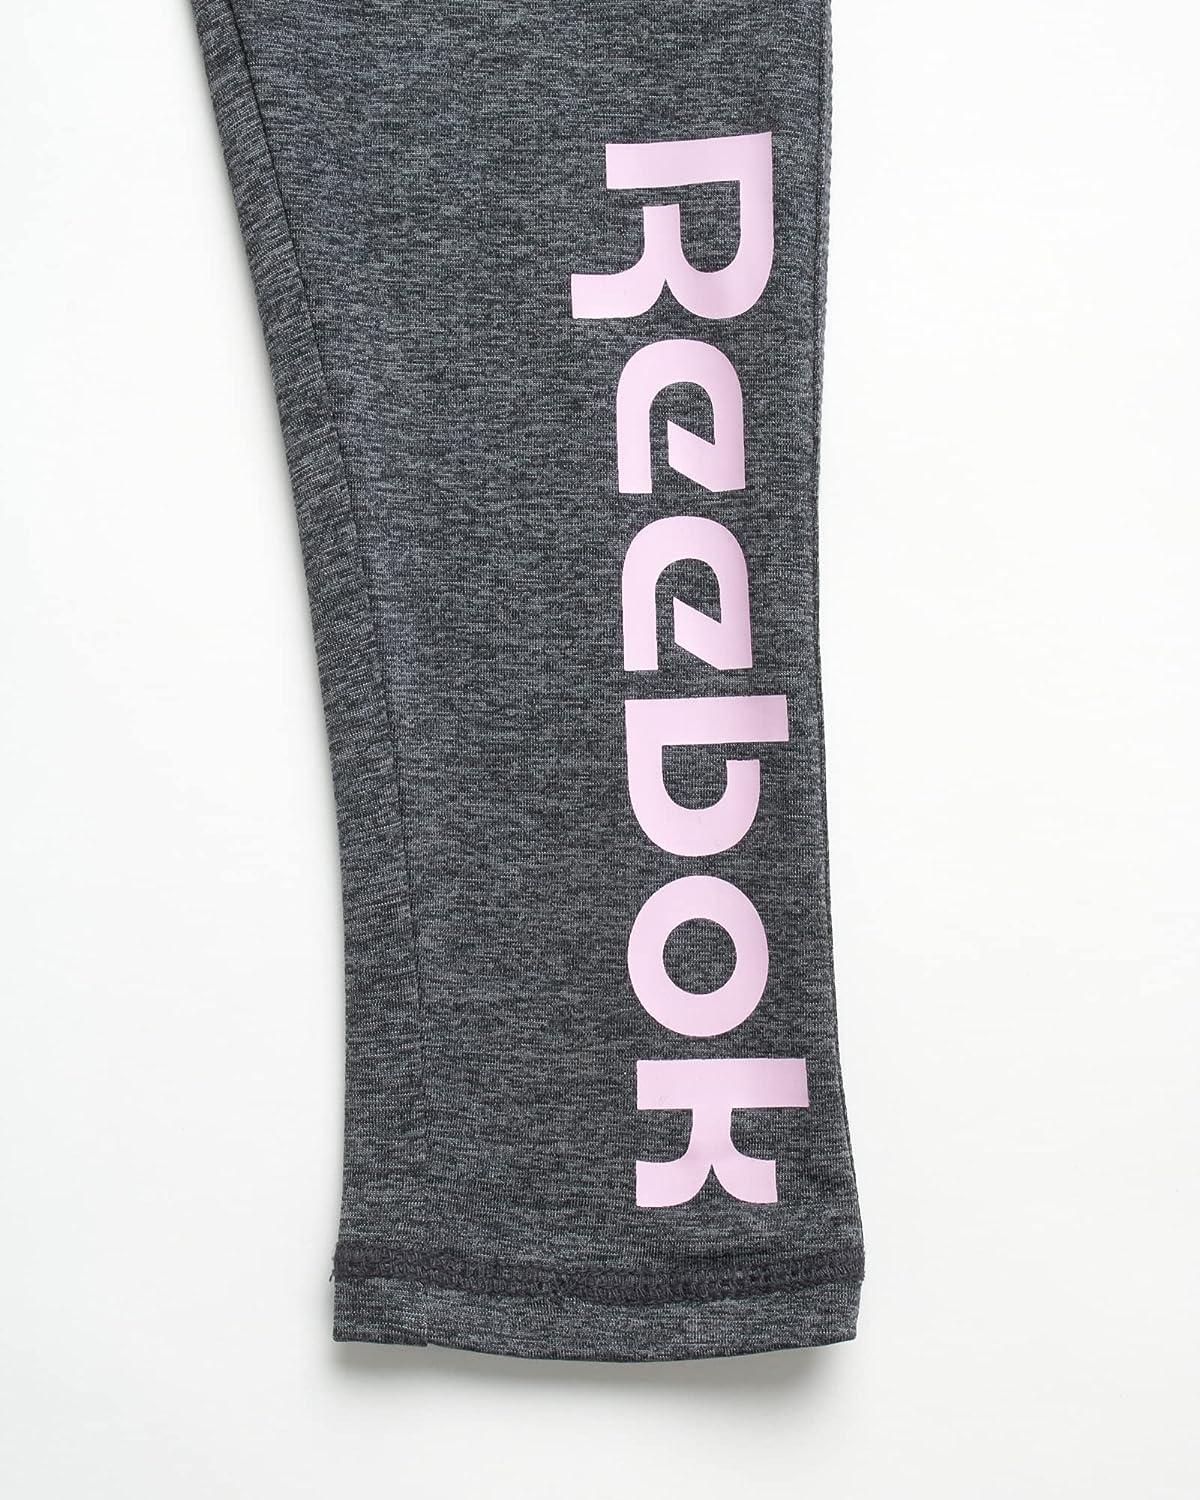 Buy ZukoCert Girls Leggings Multipack Soft Comfortable Pants for